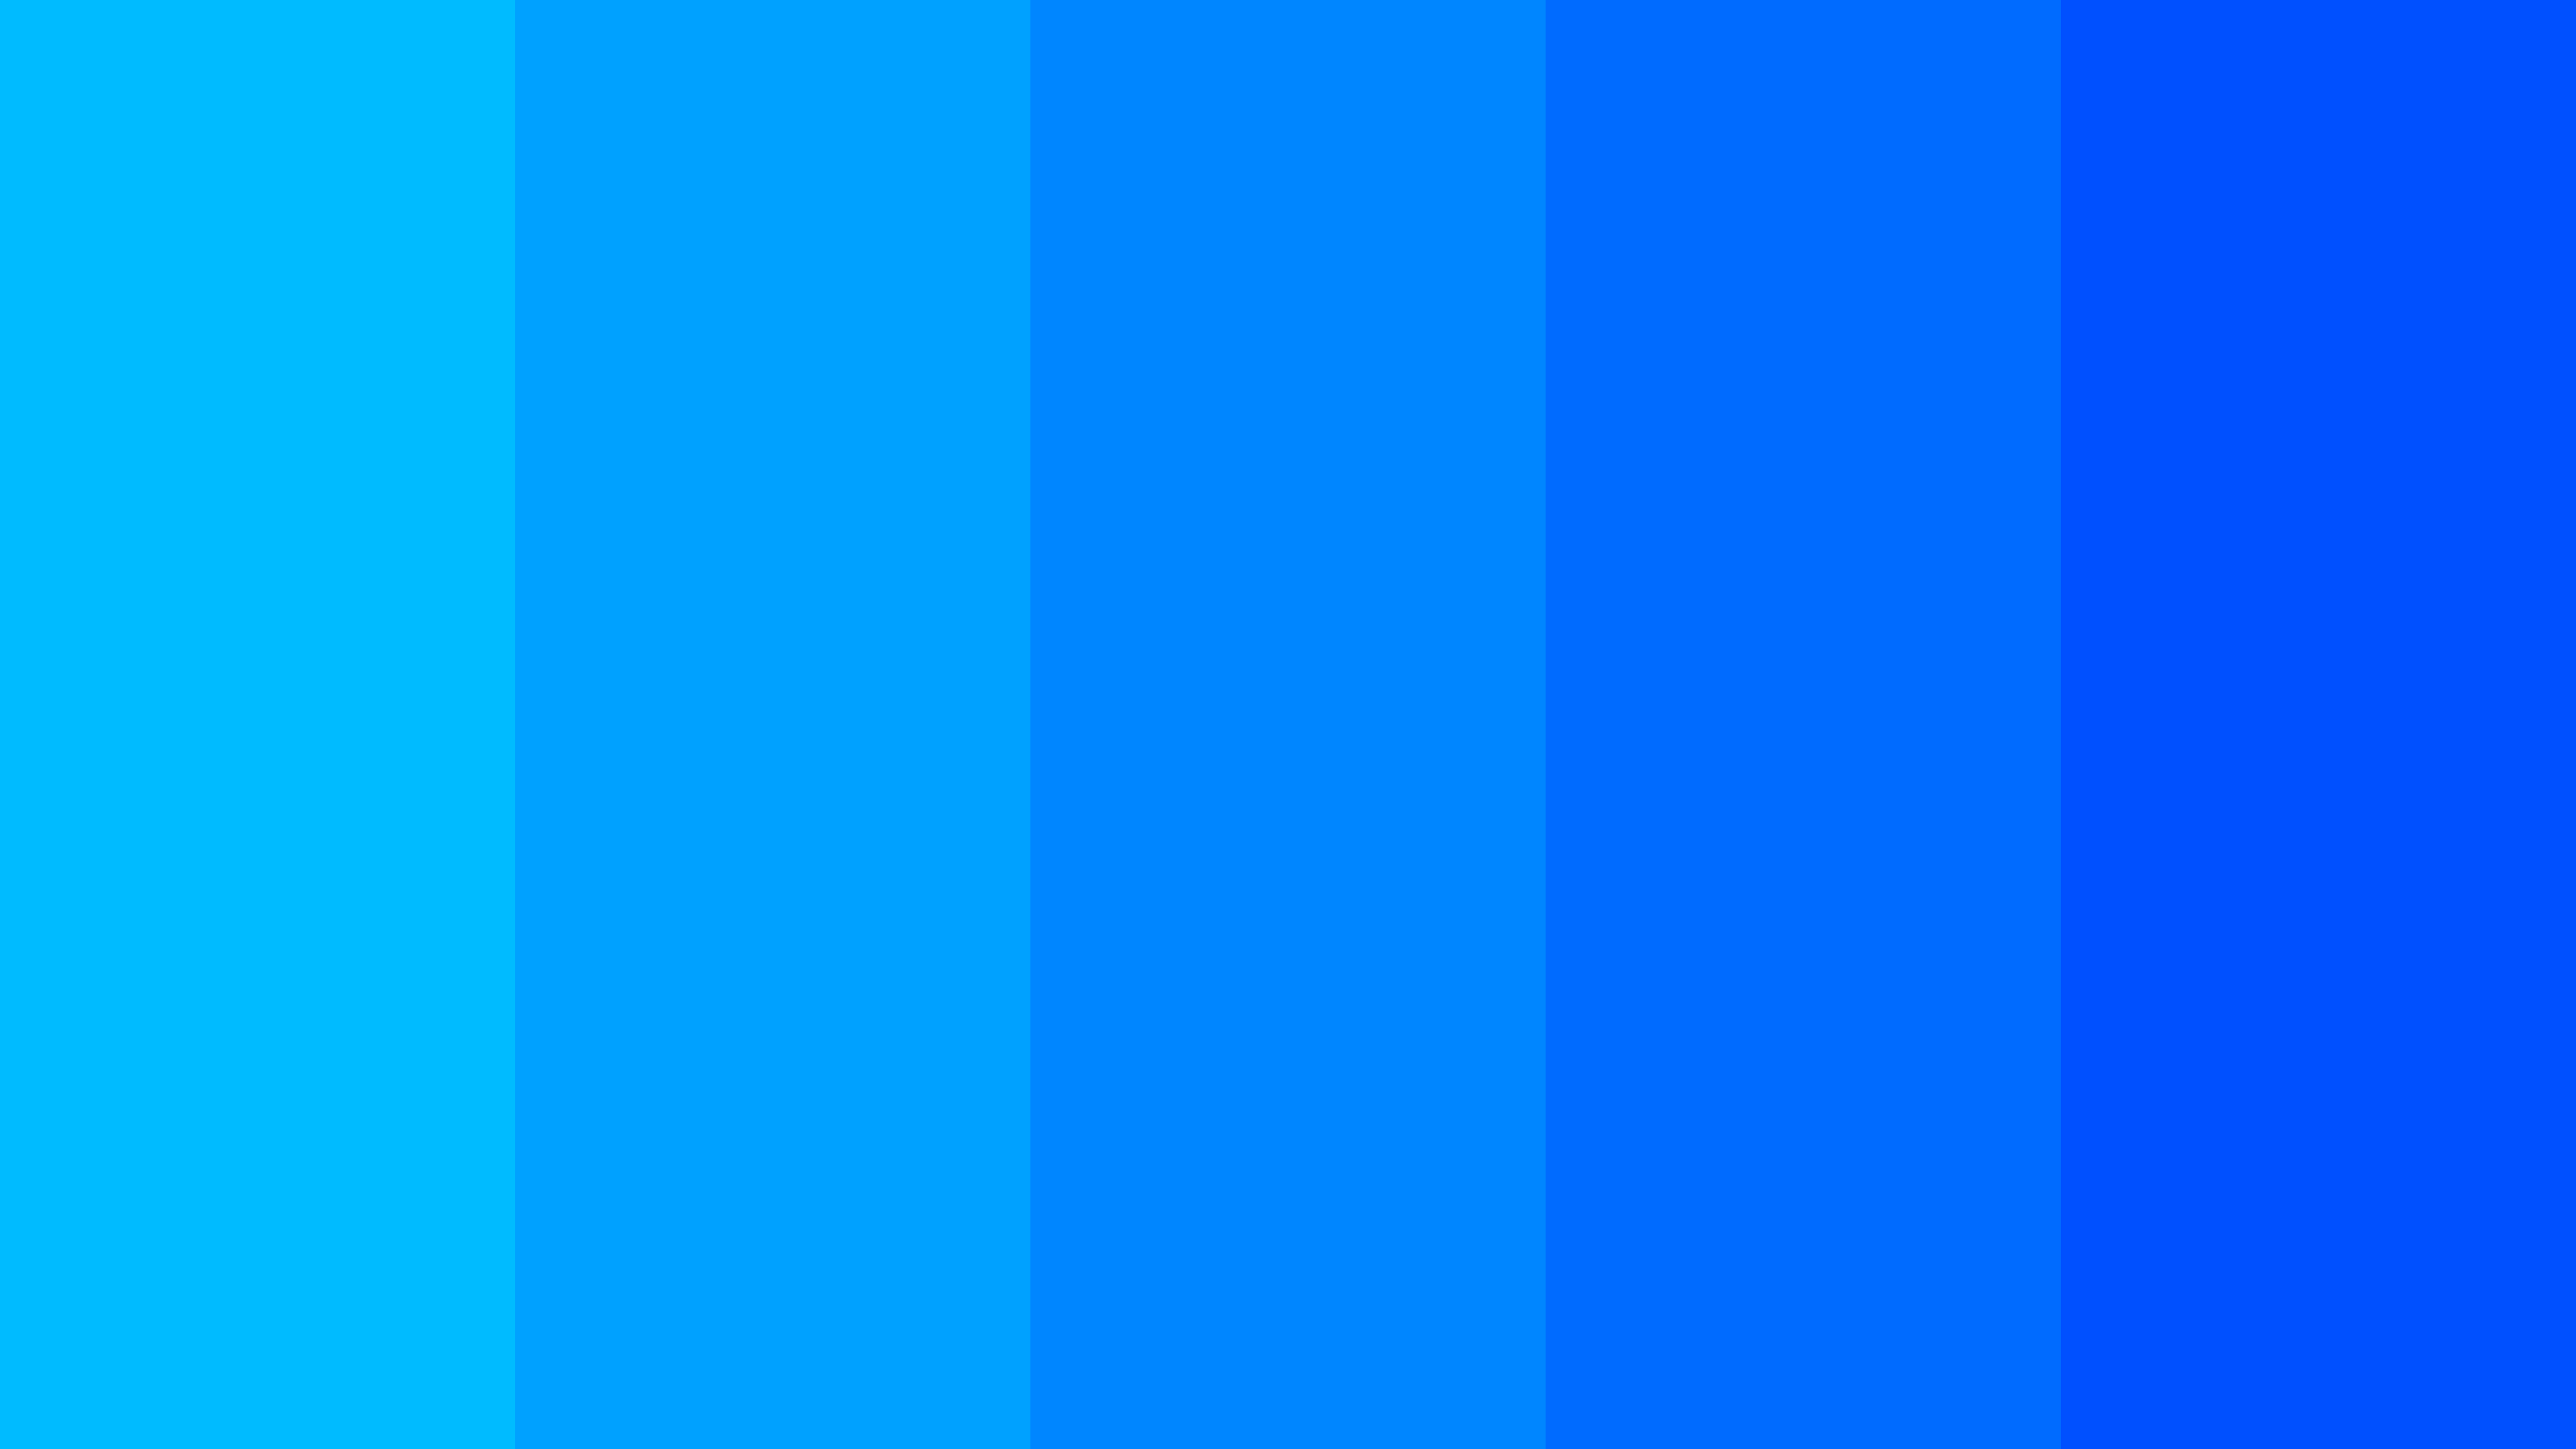 Dodger Blue – Azure Radiance – Azure Radiance – Blue Ribbon – Blue